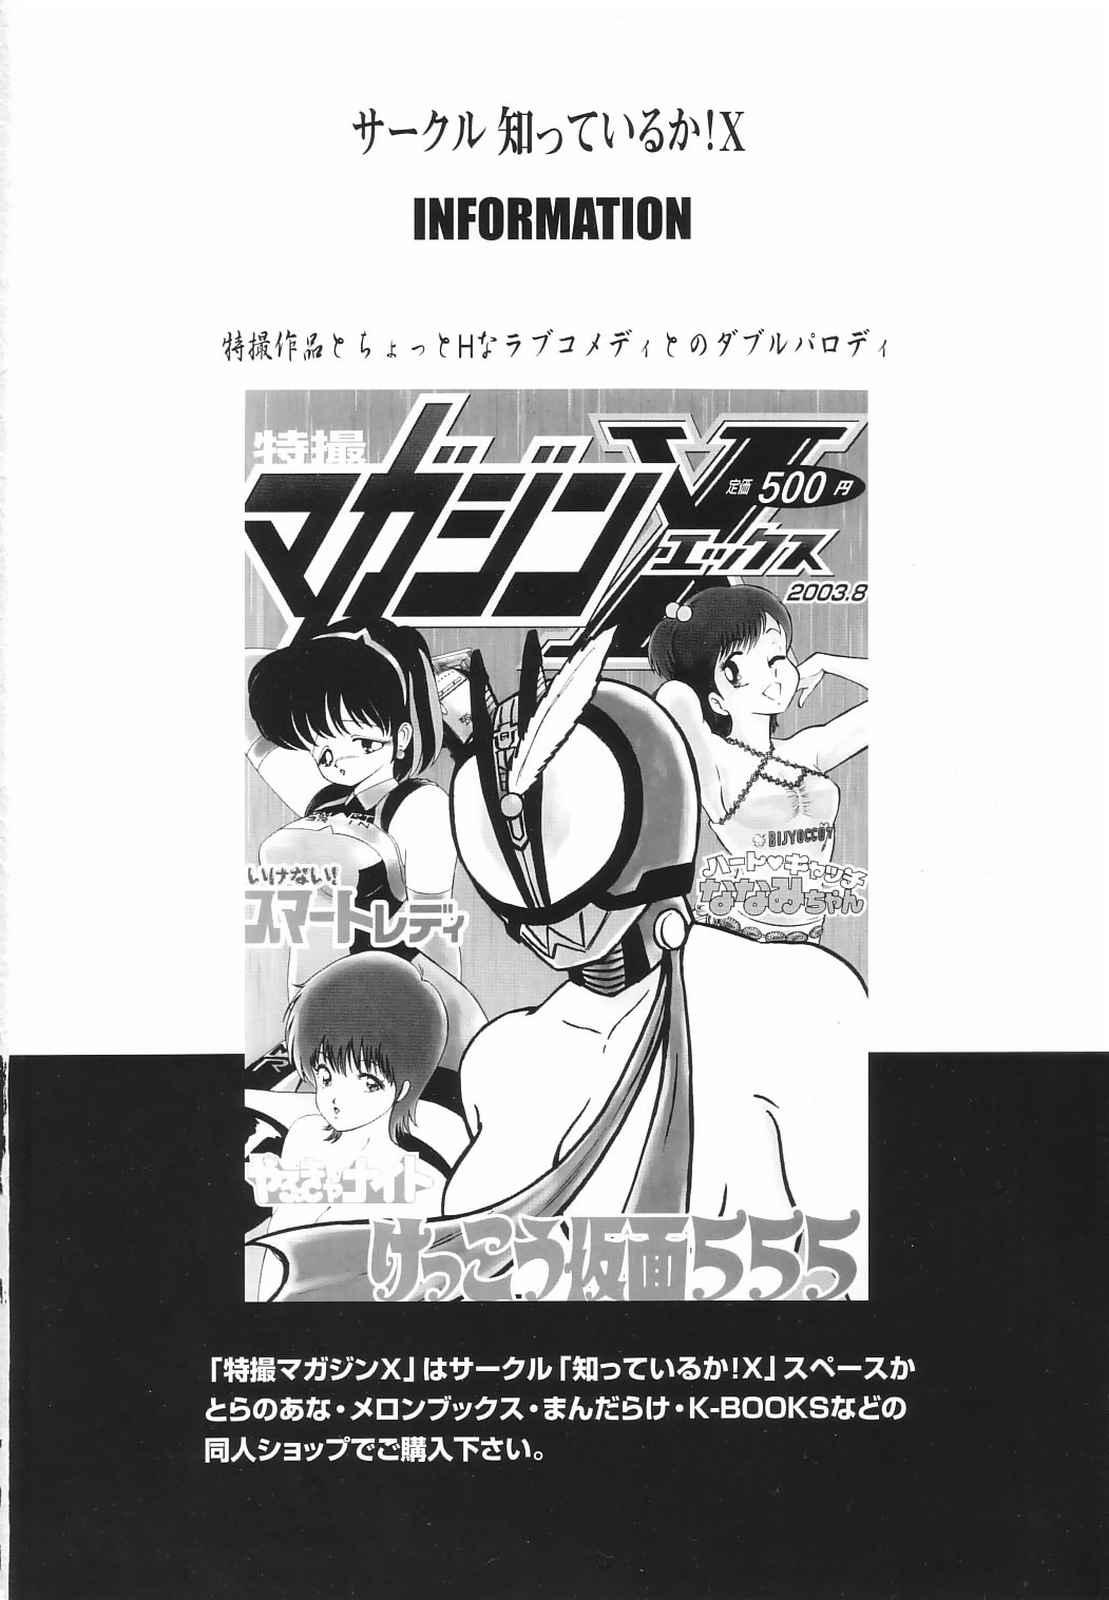 Ass Tokusatsu Magazine x 2003 Fuyu Gou - Sailor moon Ichigo 100 Costume - Page 2